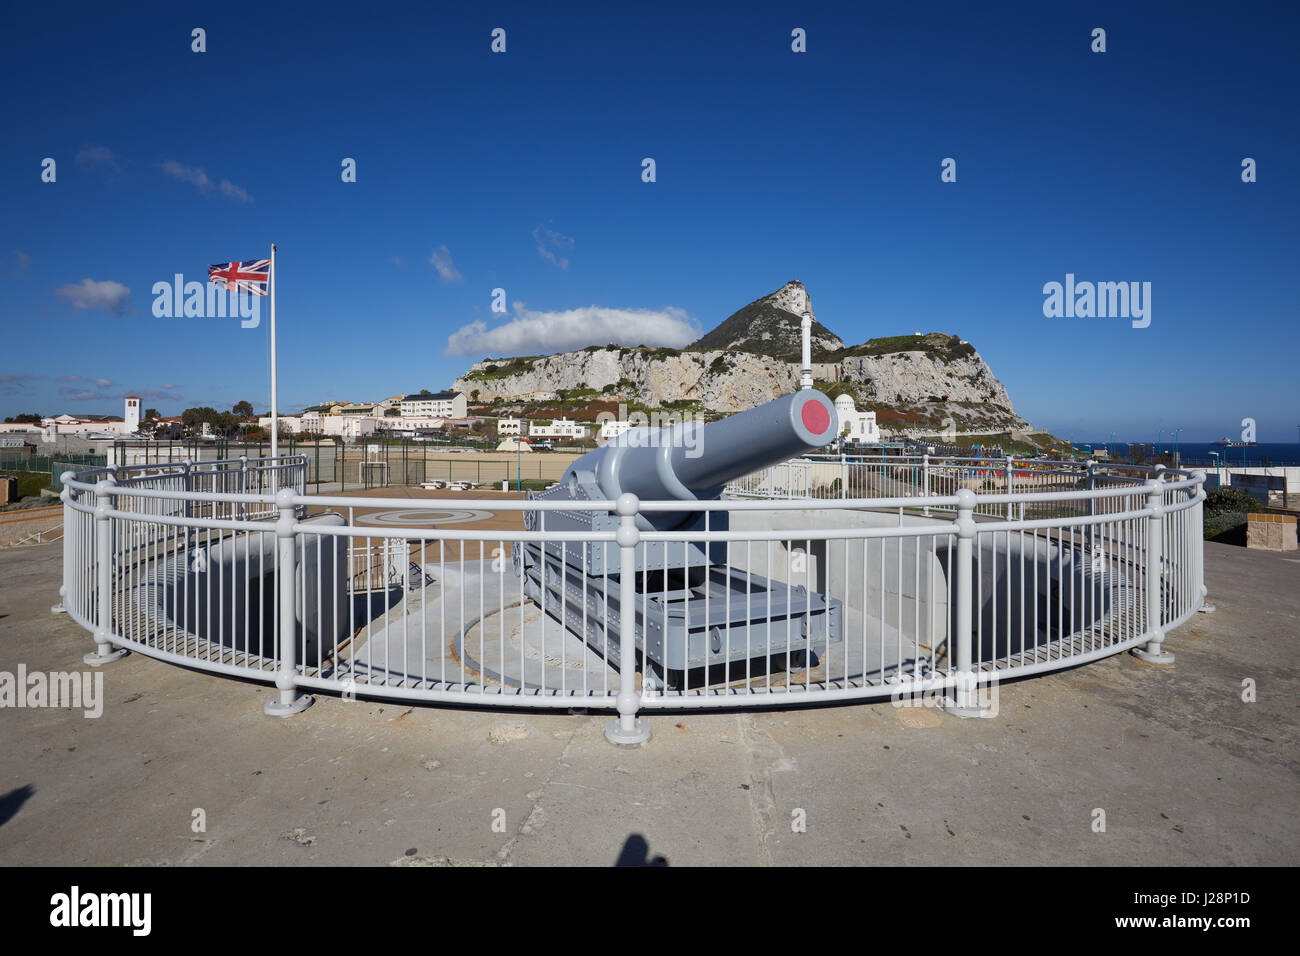 Gibraltar, le canon de 100 tonnes à la pointe sud de la péninsule, 'Europa-Point', construite en 1870, avec l'Union Jack au mât, monkey rock derrière Banque D'Images